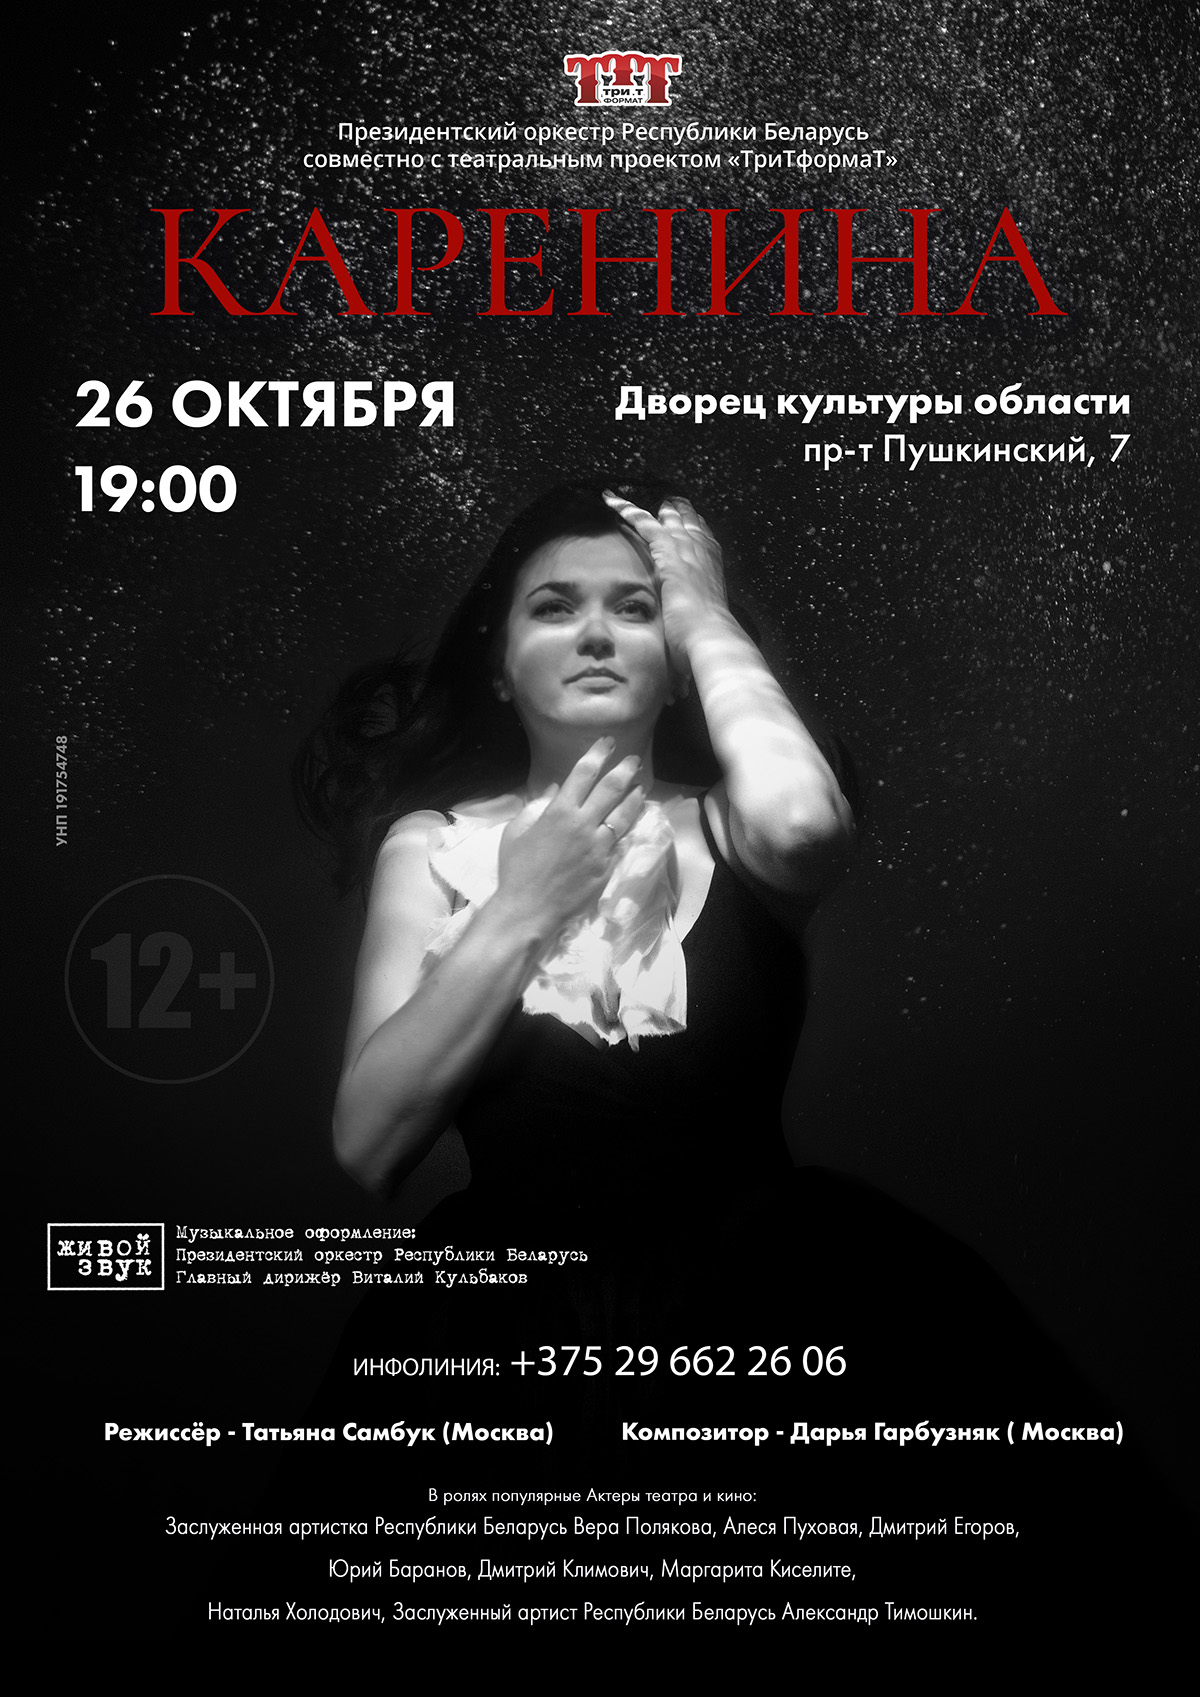 Театральный проект «ТриТформаТ» представит в Могилеве спектакль «Каренина»